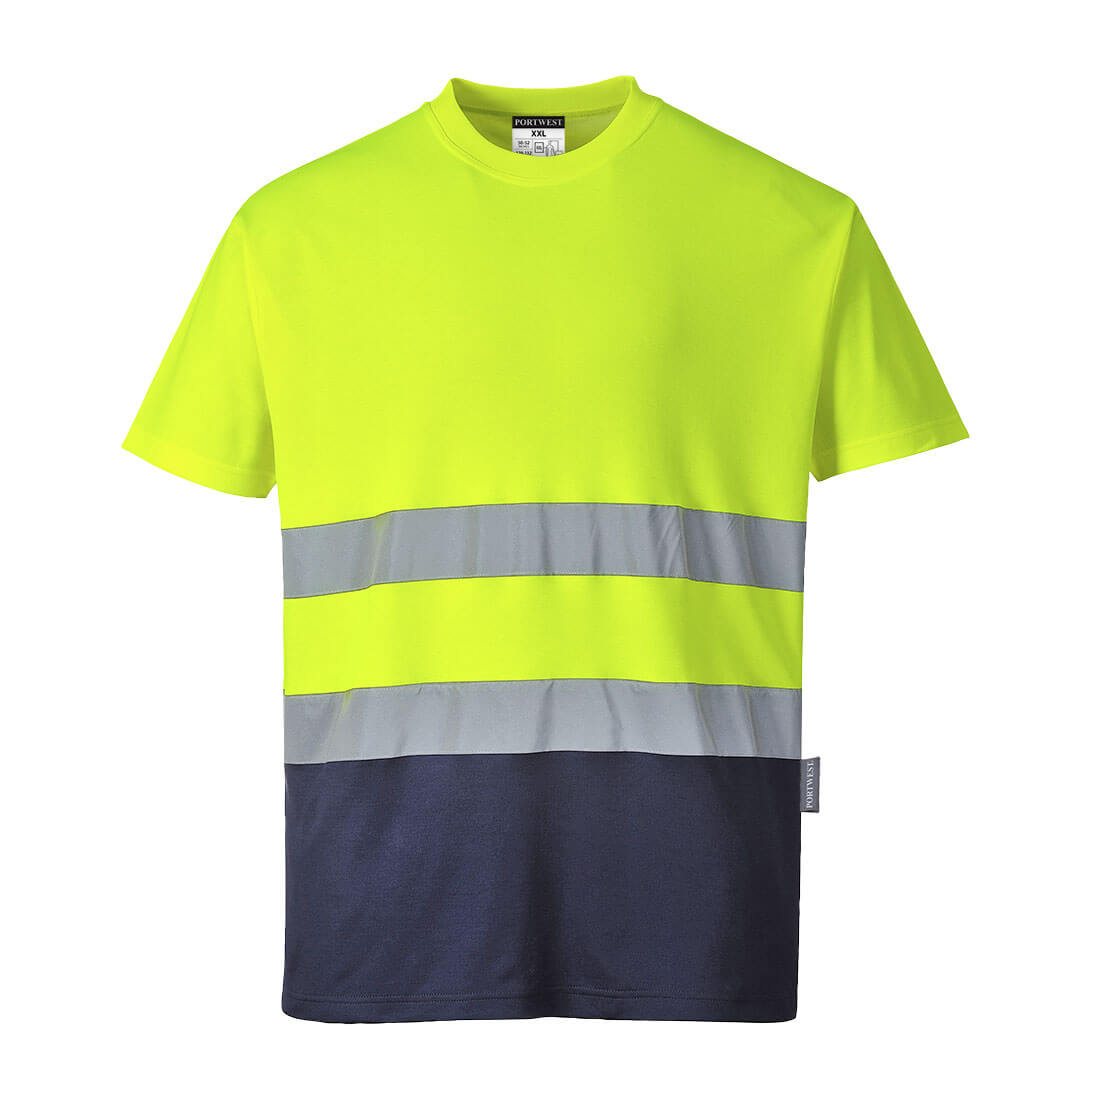 Portwest S173 Two Tone Cotton Comfort Hi Vis T-Shirt 1#colour_yellow-navy